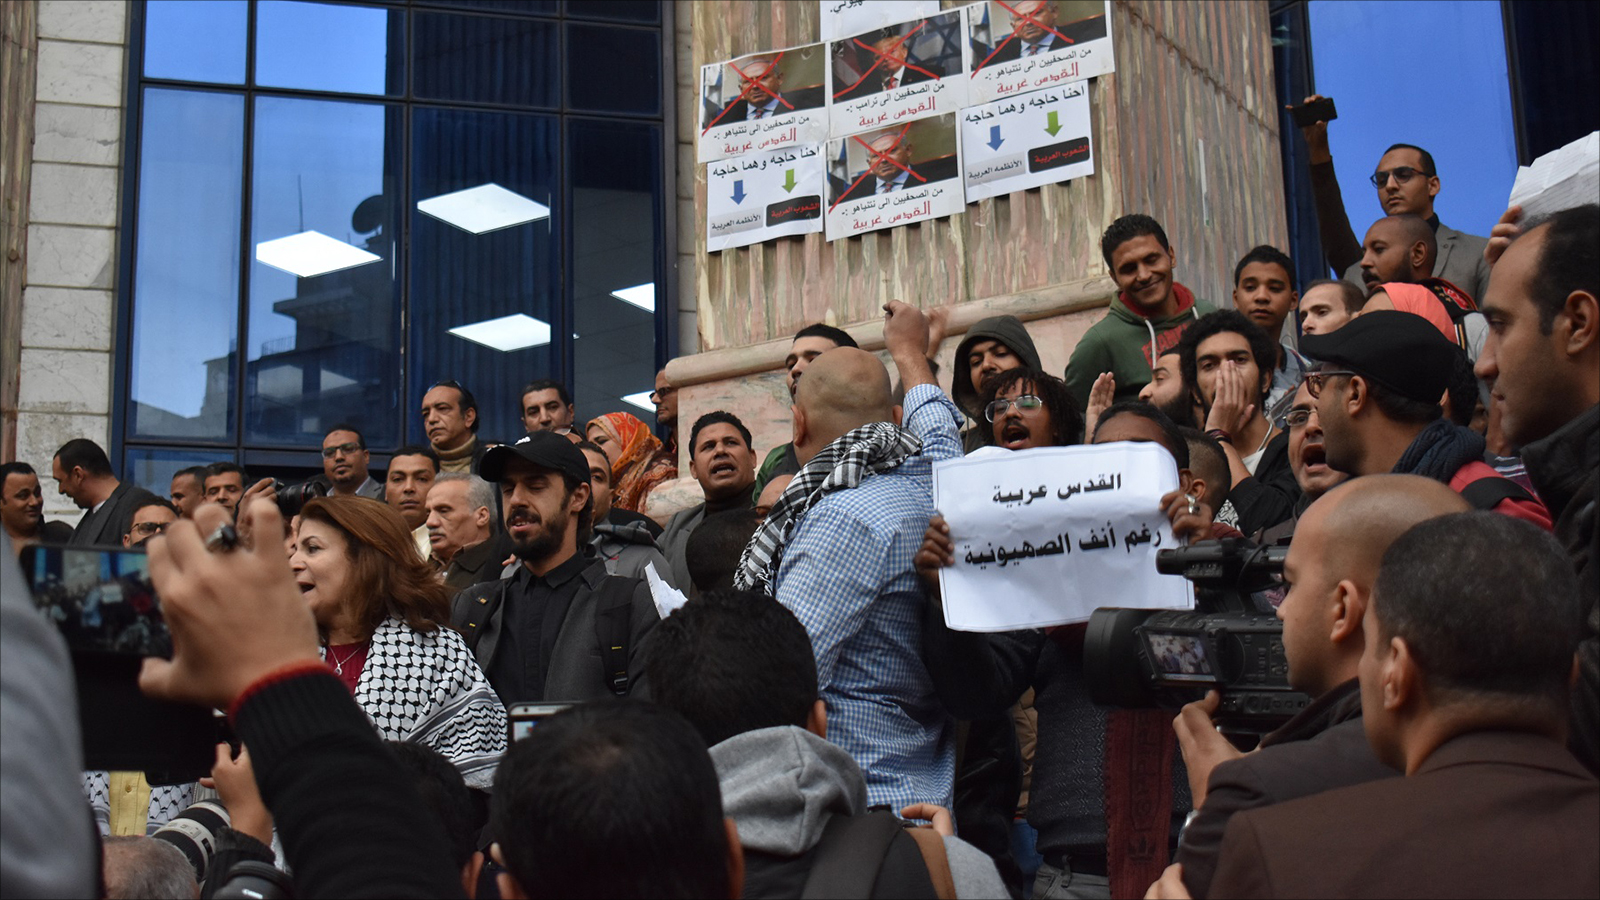 ‪المحتجون يرفعون لافتات مناهضة للصهيونية‬ (الجزيرة)